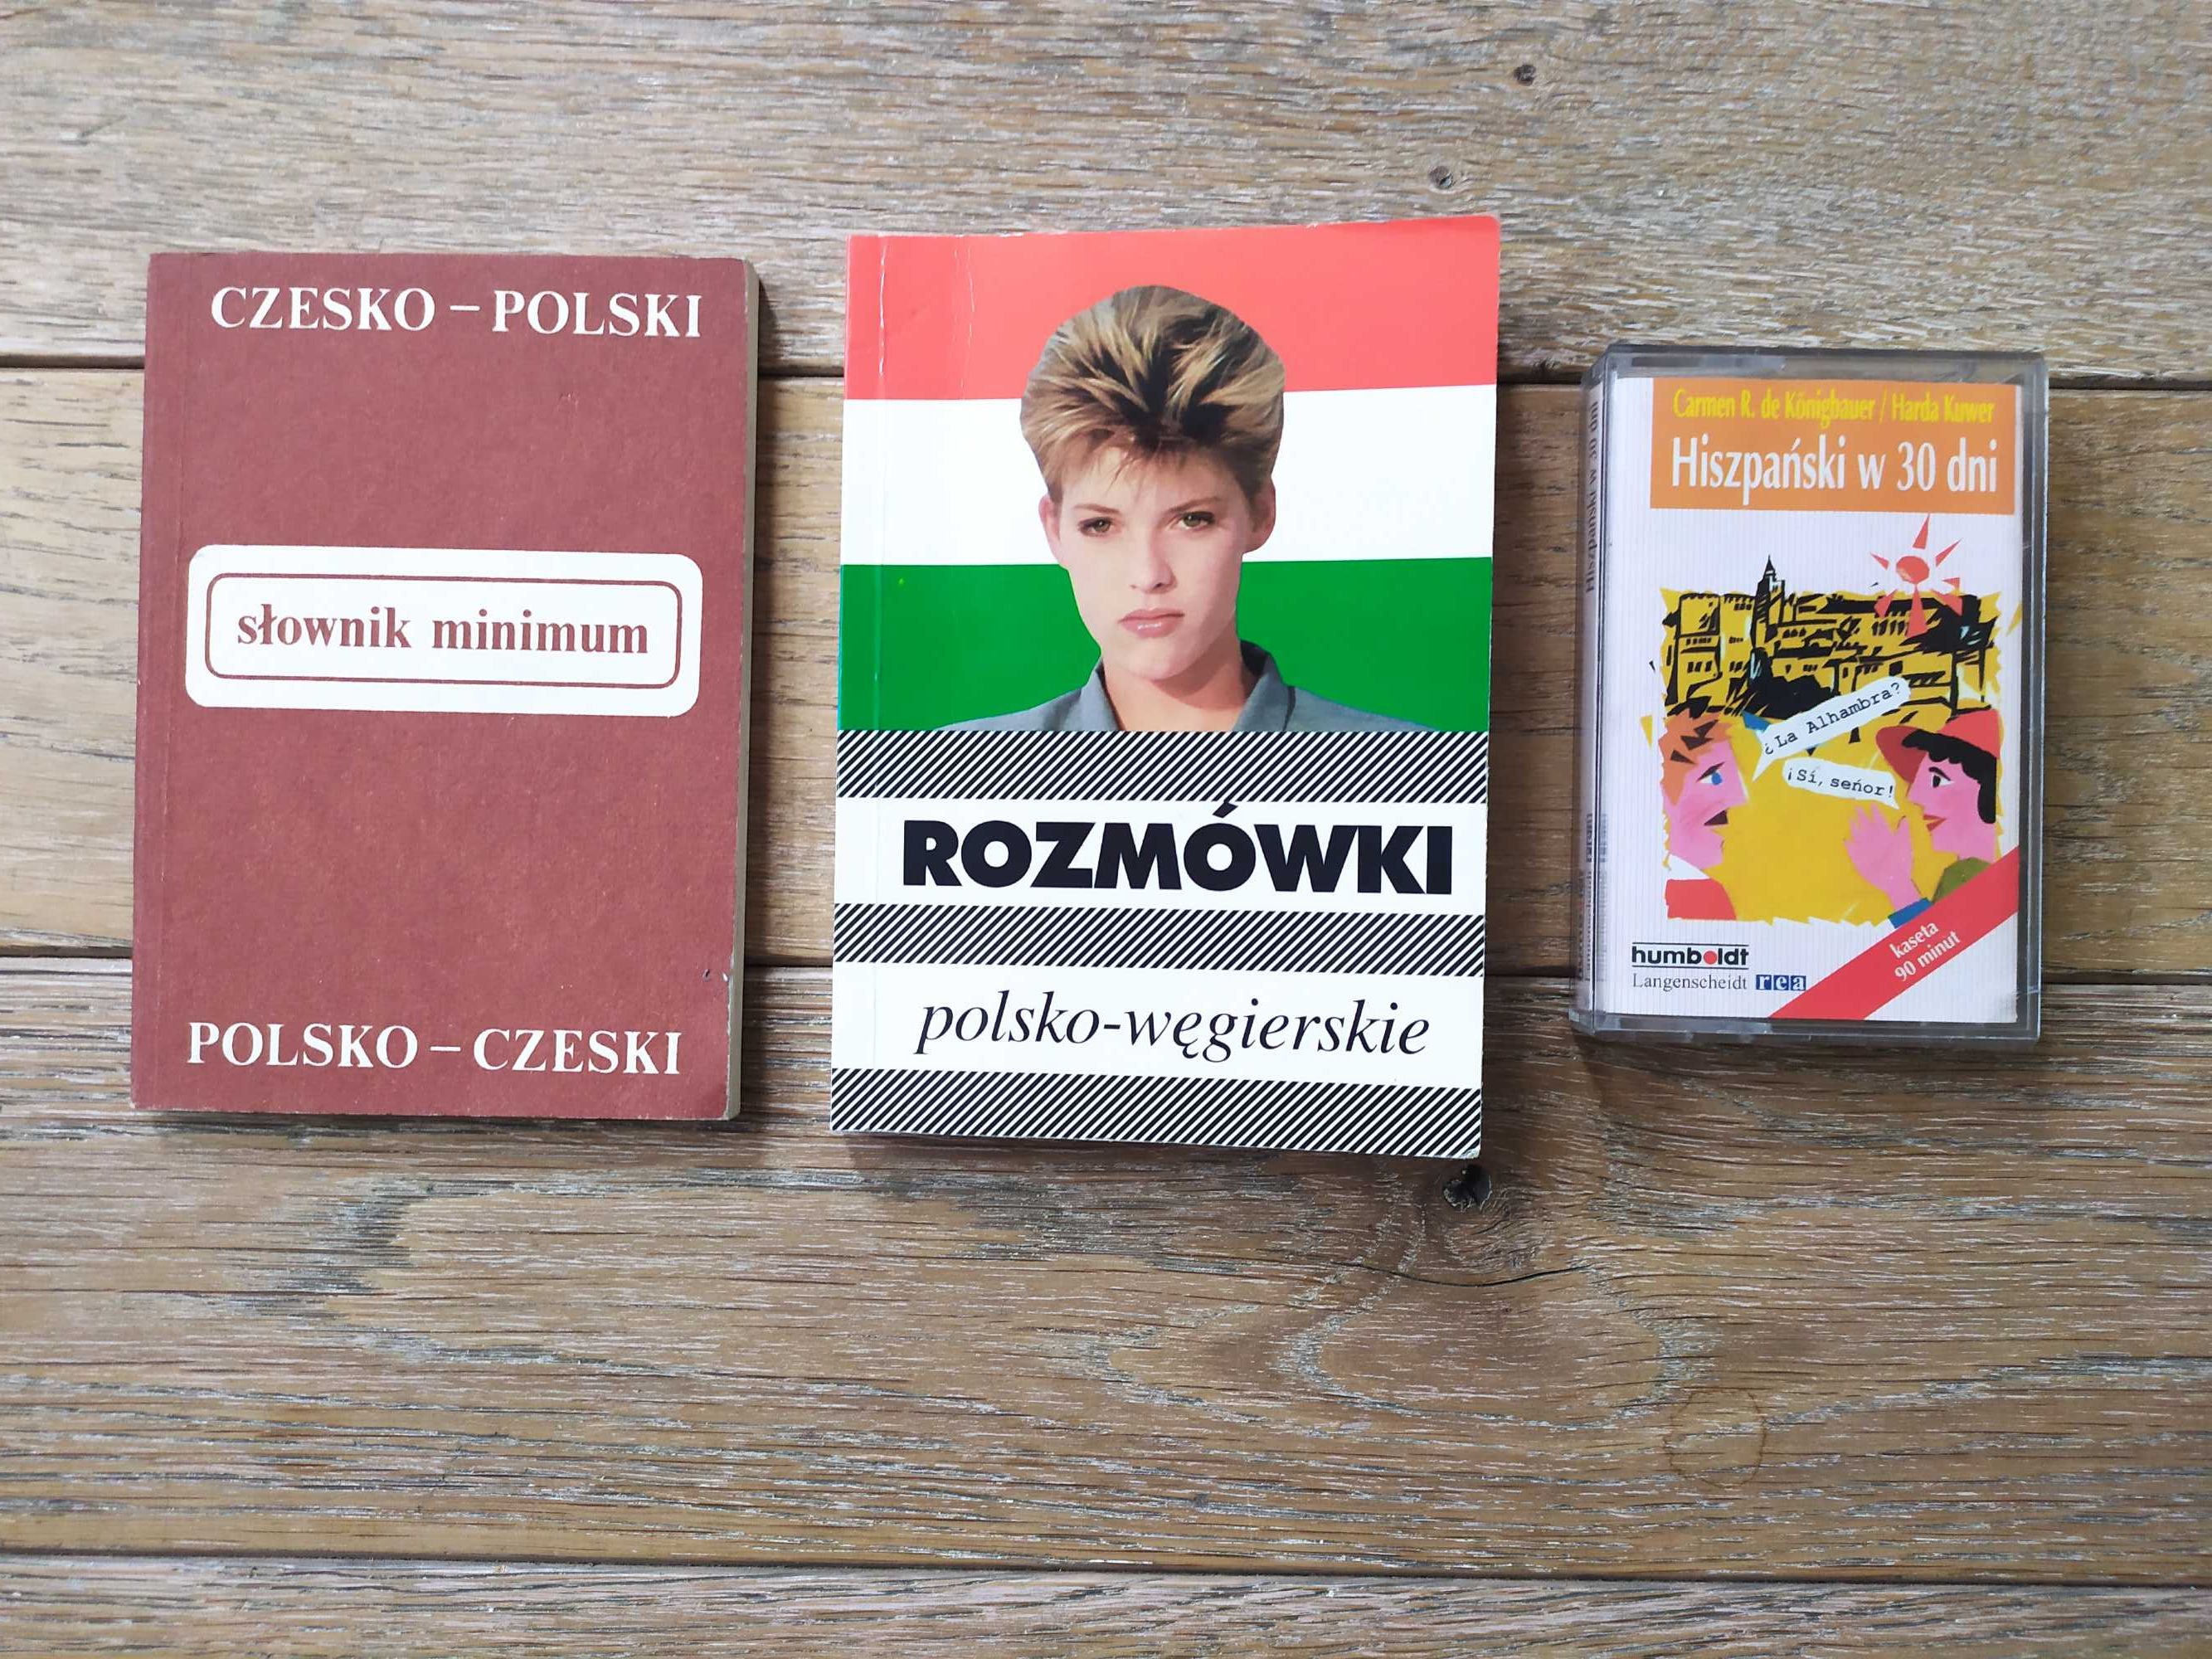 Słownik czesko-polski Rozmówki polsko-węgierskie Hiszpański w 30 dni